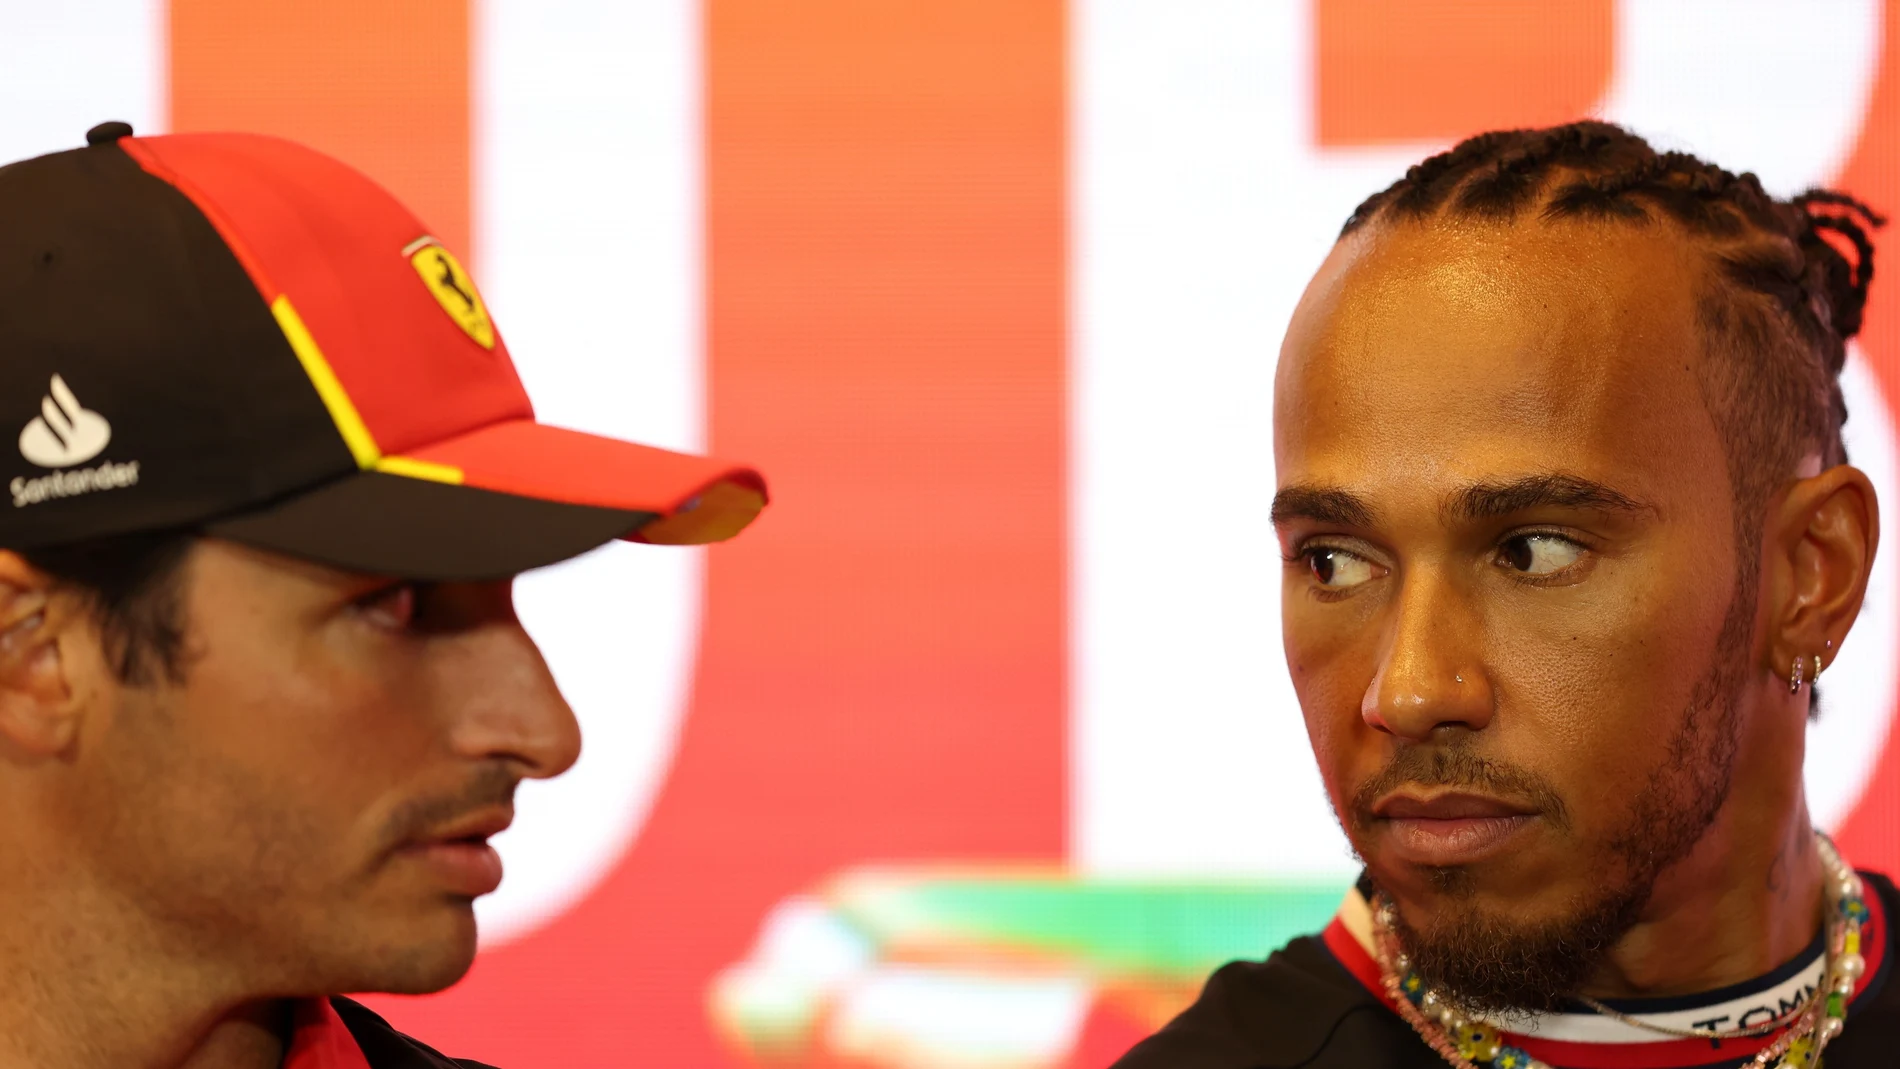 Carlos Sainz junto a Lewis Hamilton